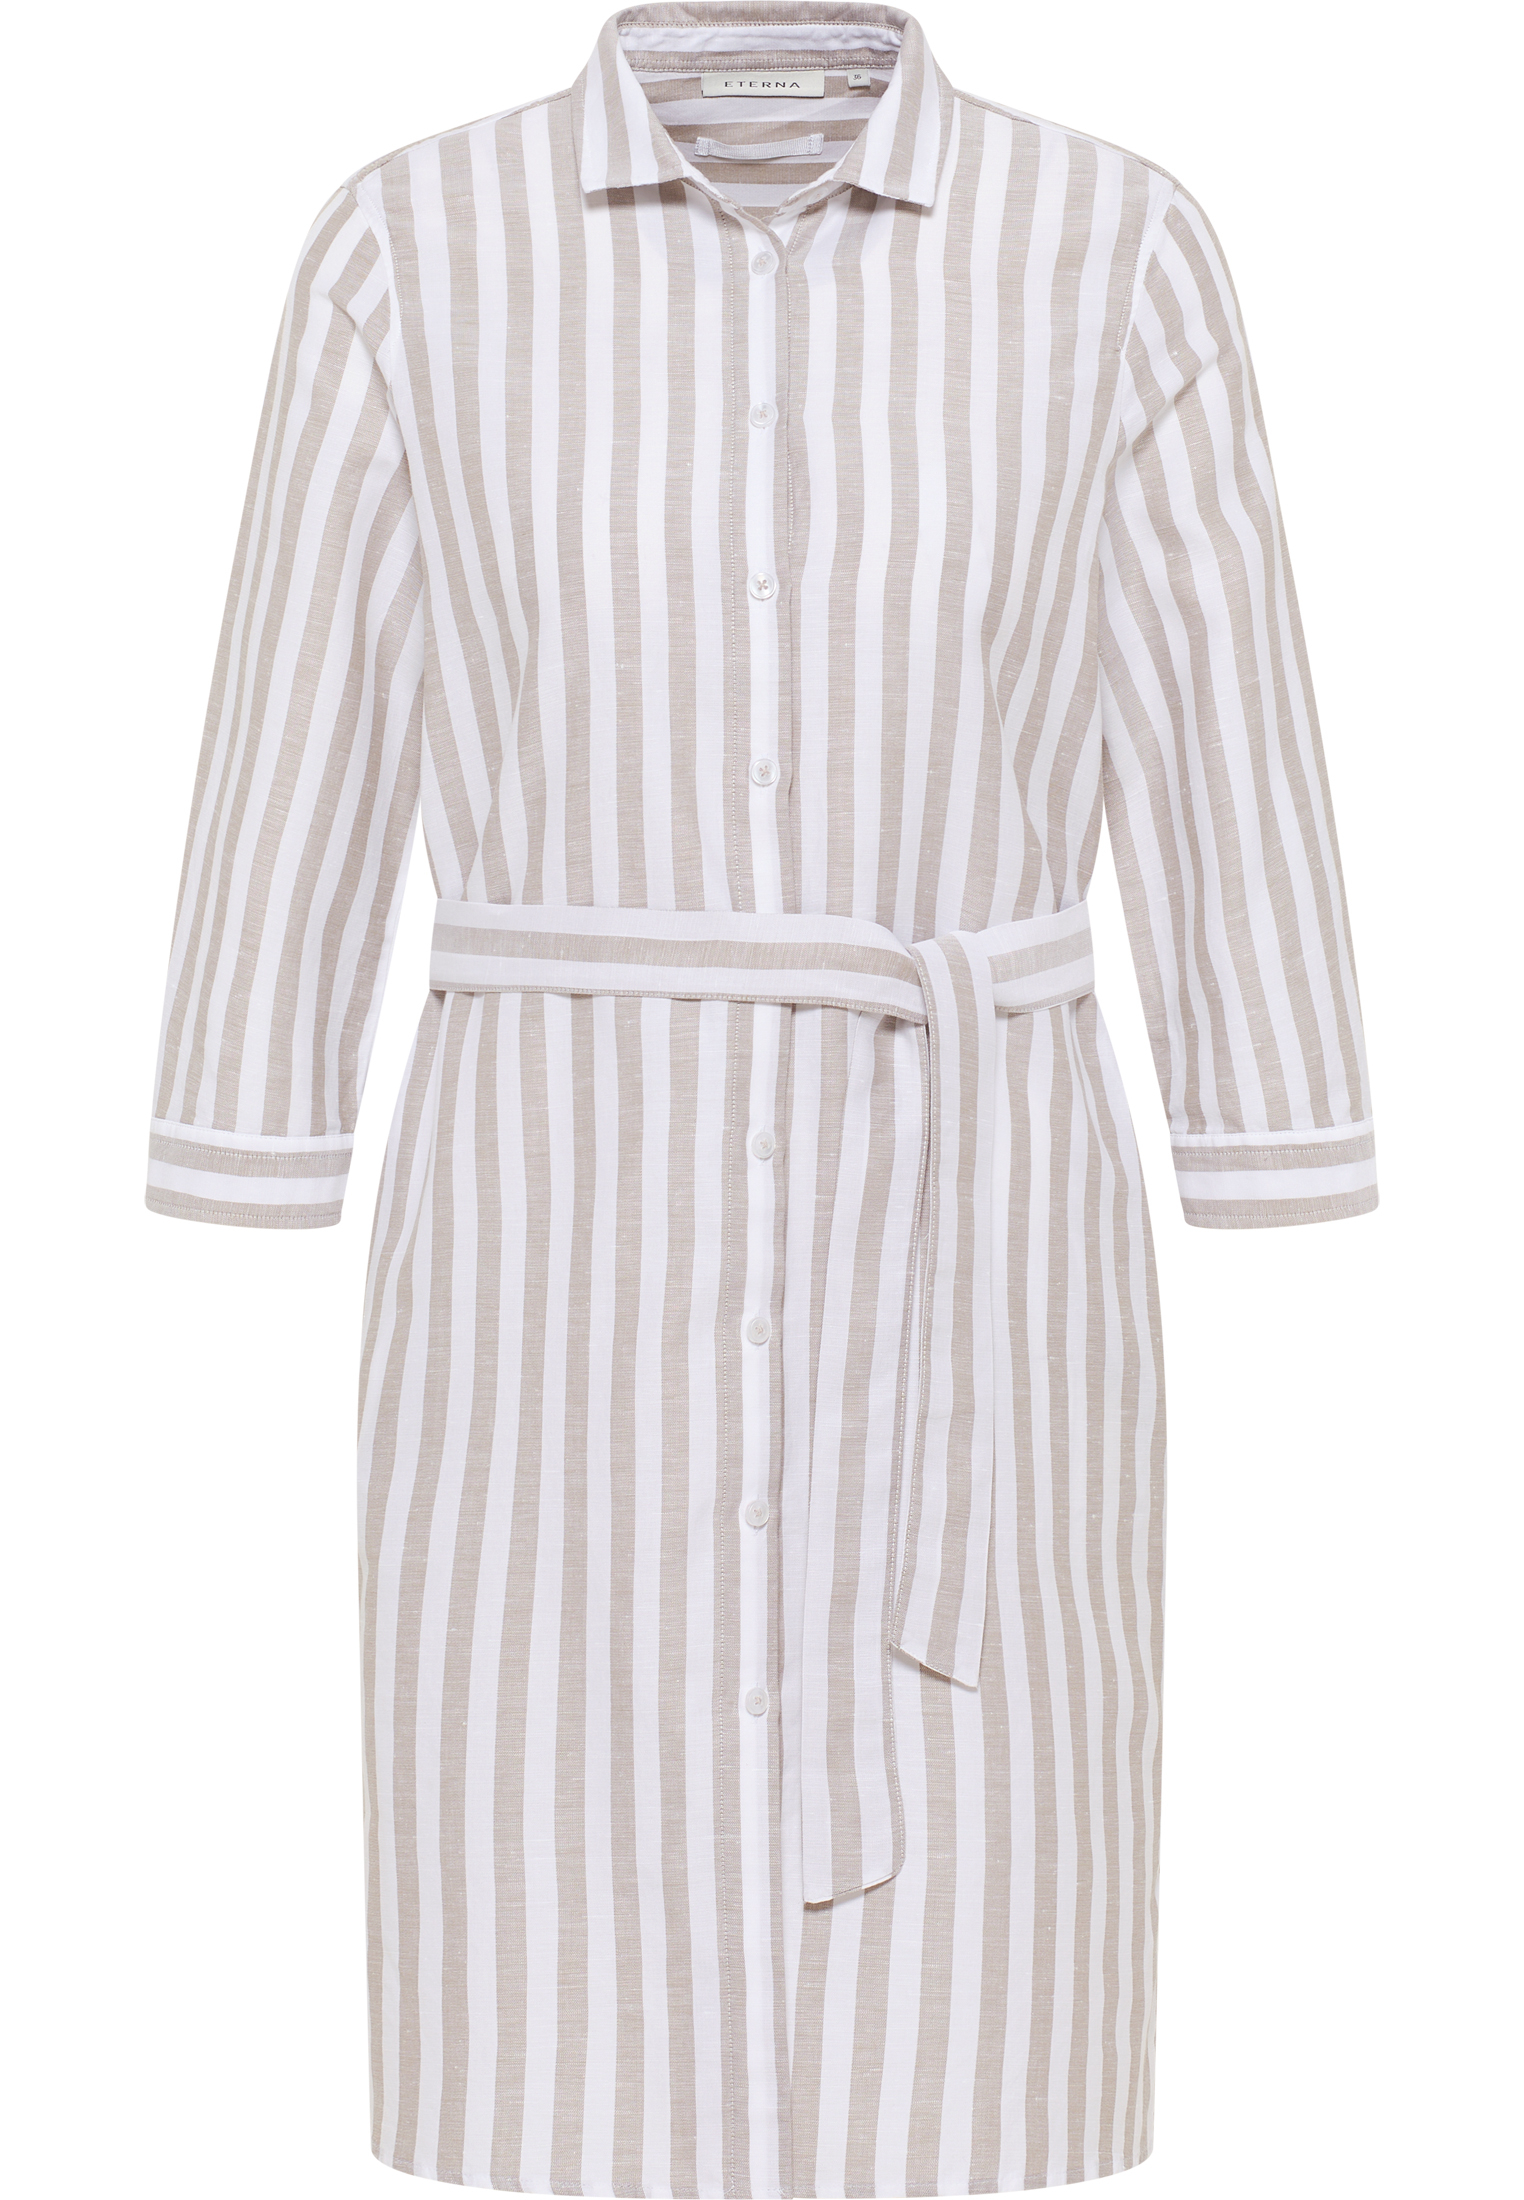 Hemdblusenkleid in khaki striped | khaki | 50 | 3/4 sleeves |  2DR00267-04-52-50-3/4